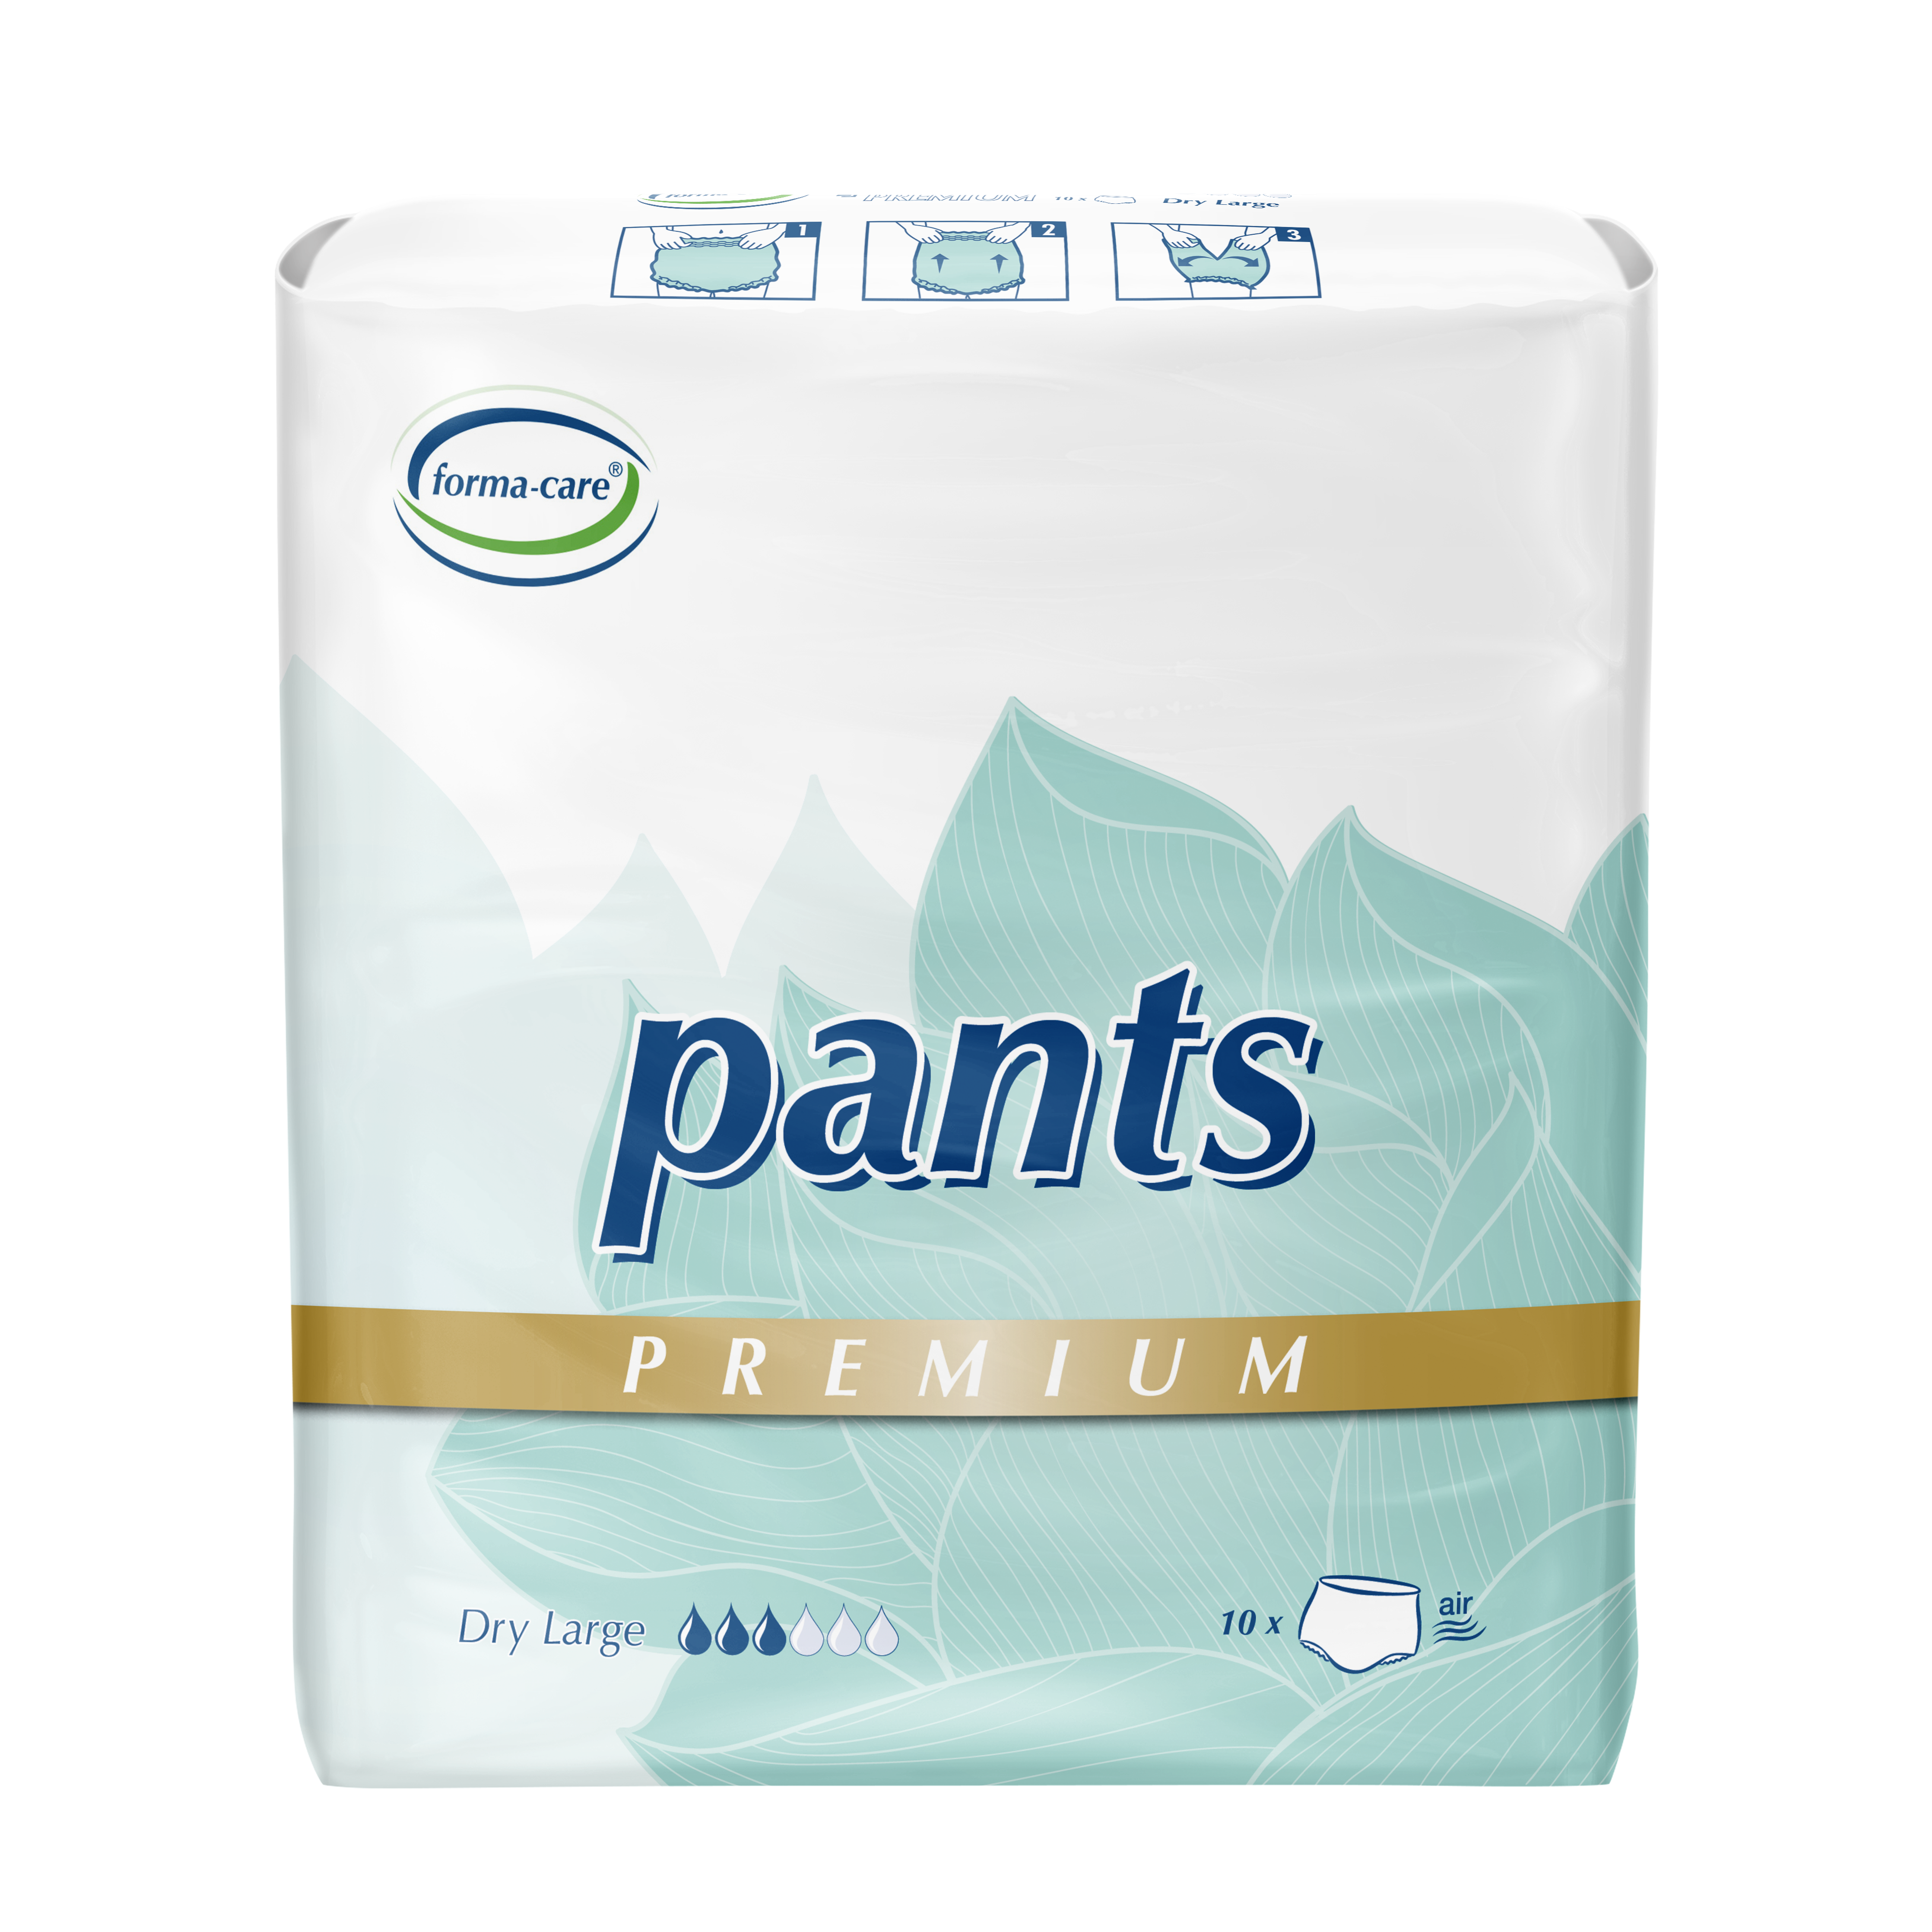 Abbildung eines Beutels forma-care Premium Pants Größe L